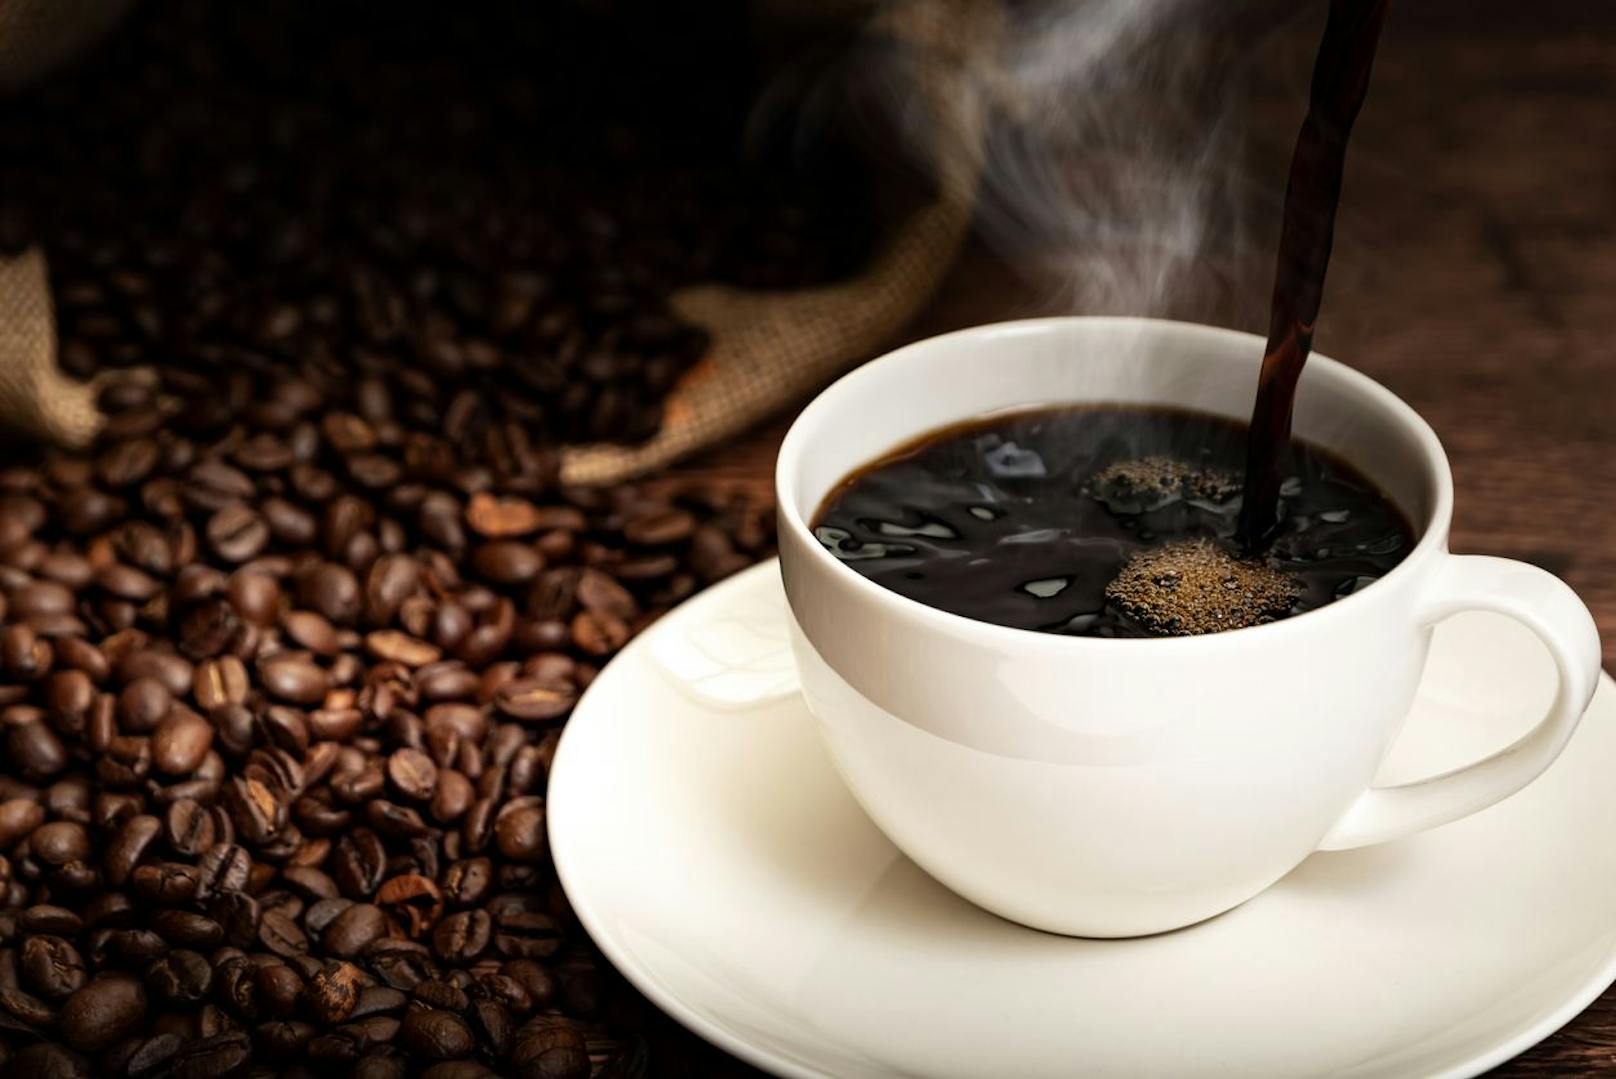 Kaffee ist gesund - in Maßen genossen.